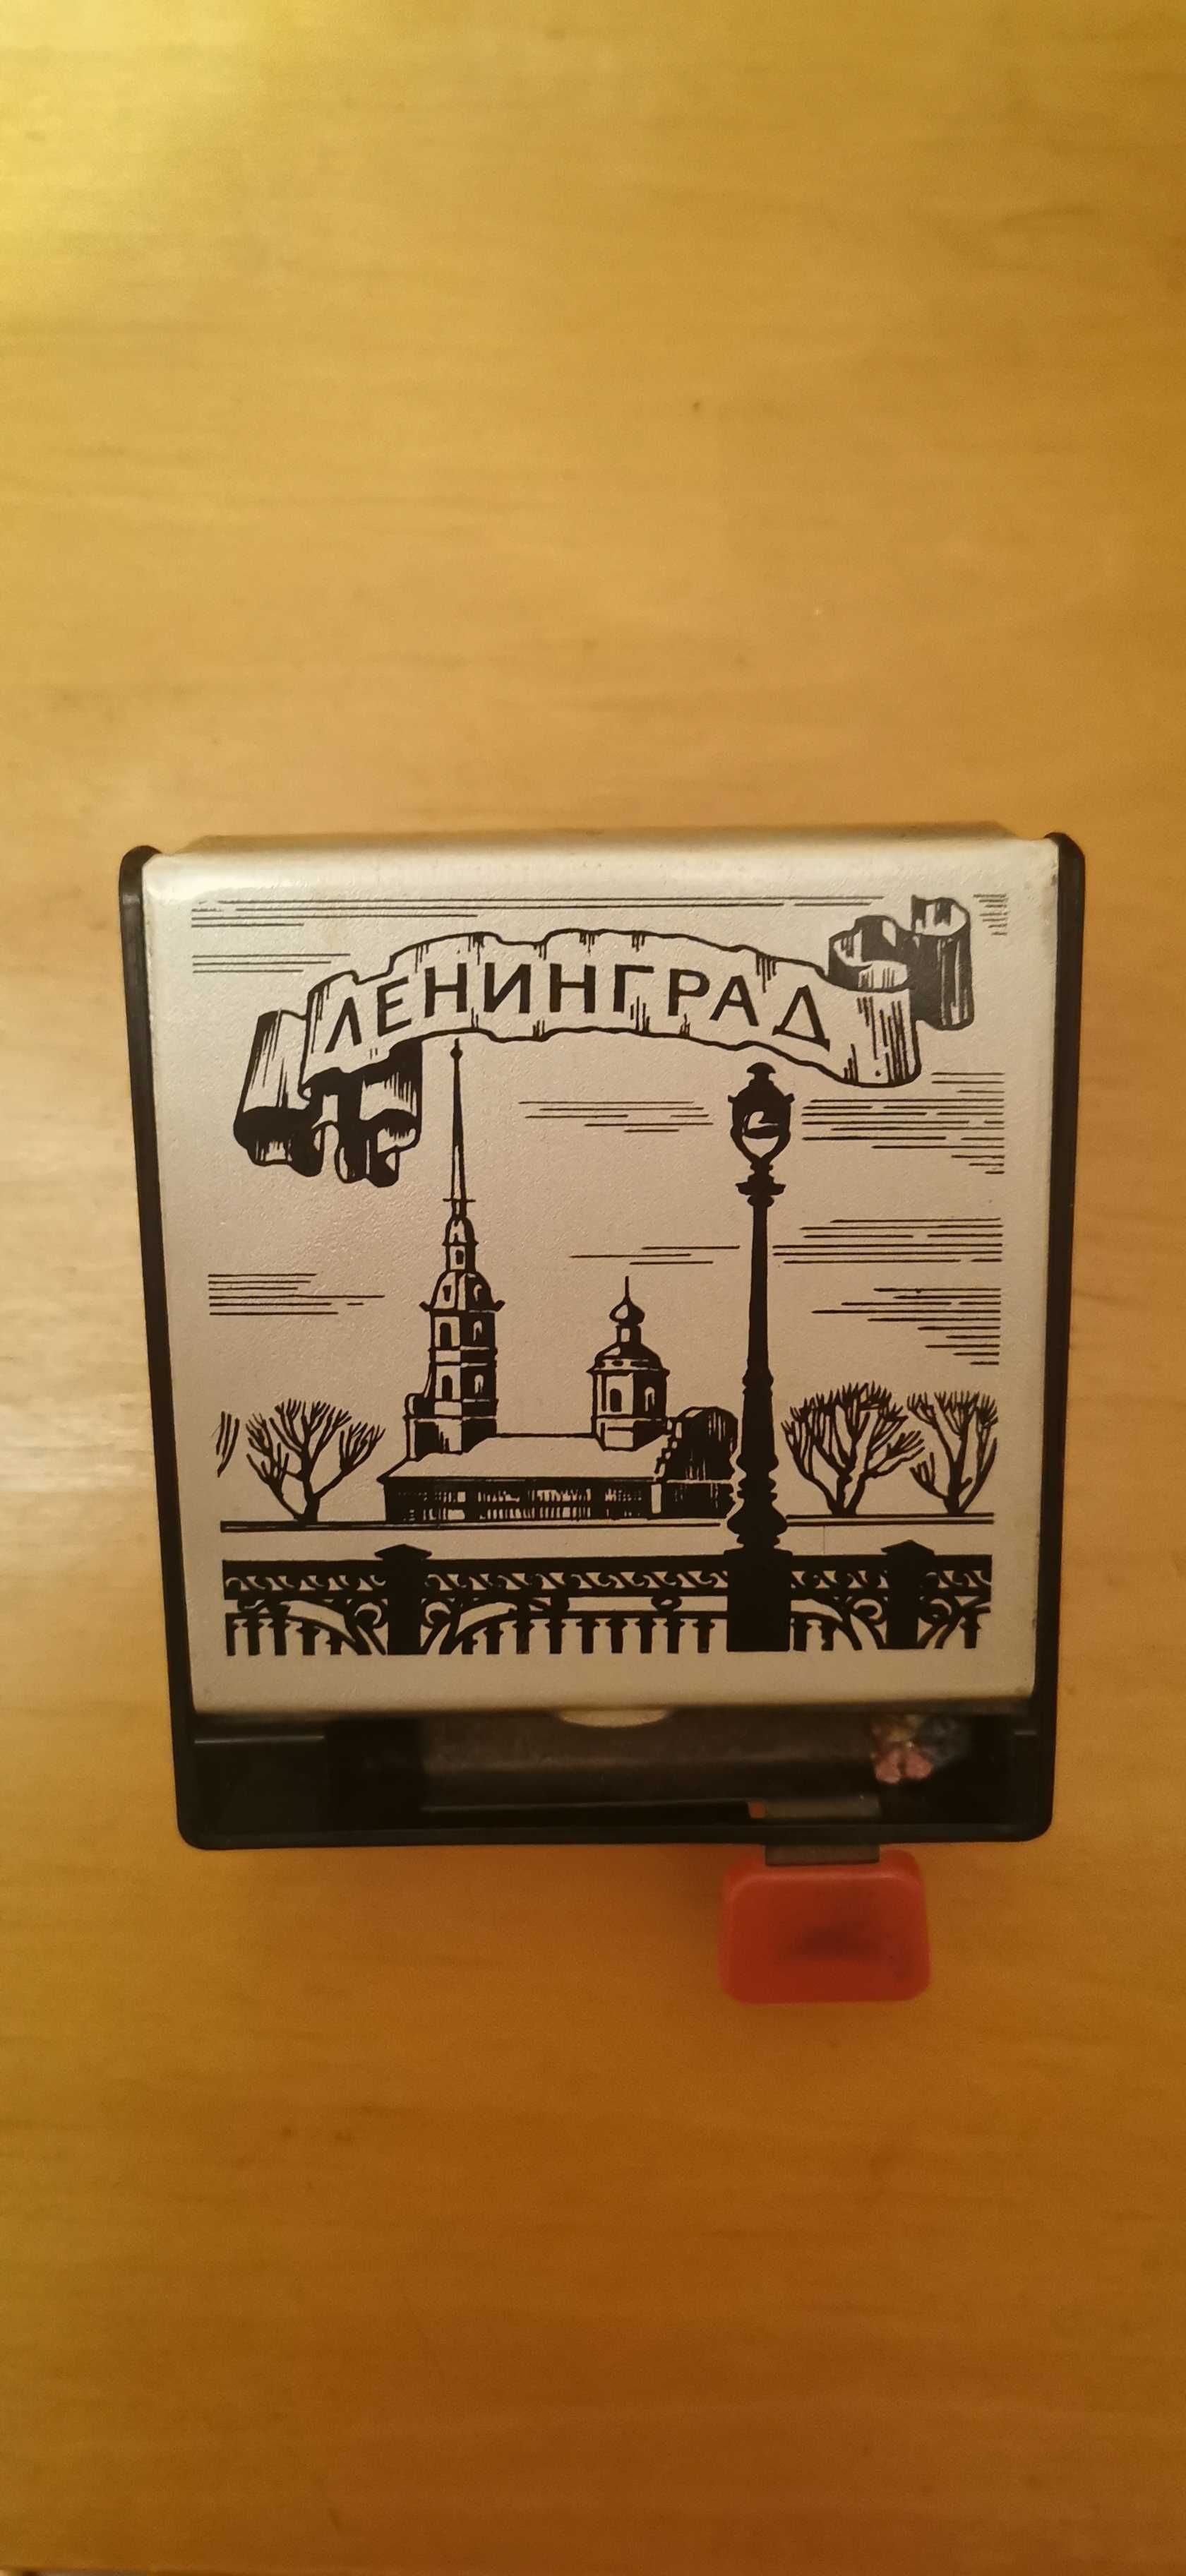 Cutie pentru țigări vintage. Perioada comunistă. Leningrad